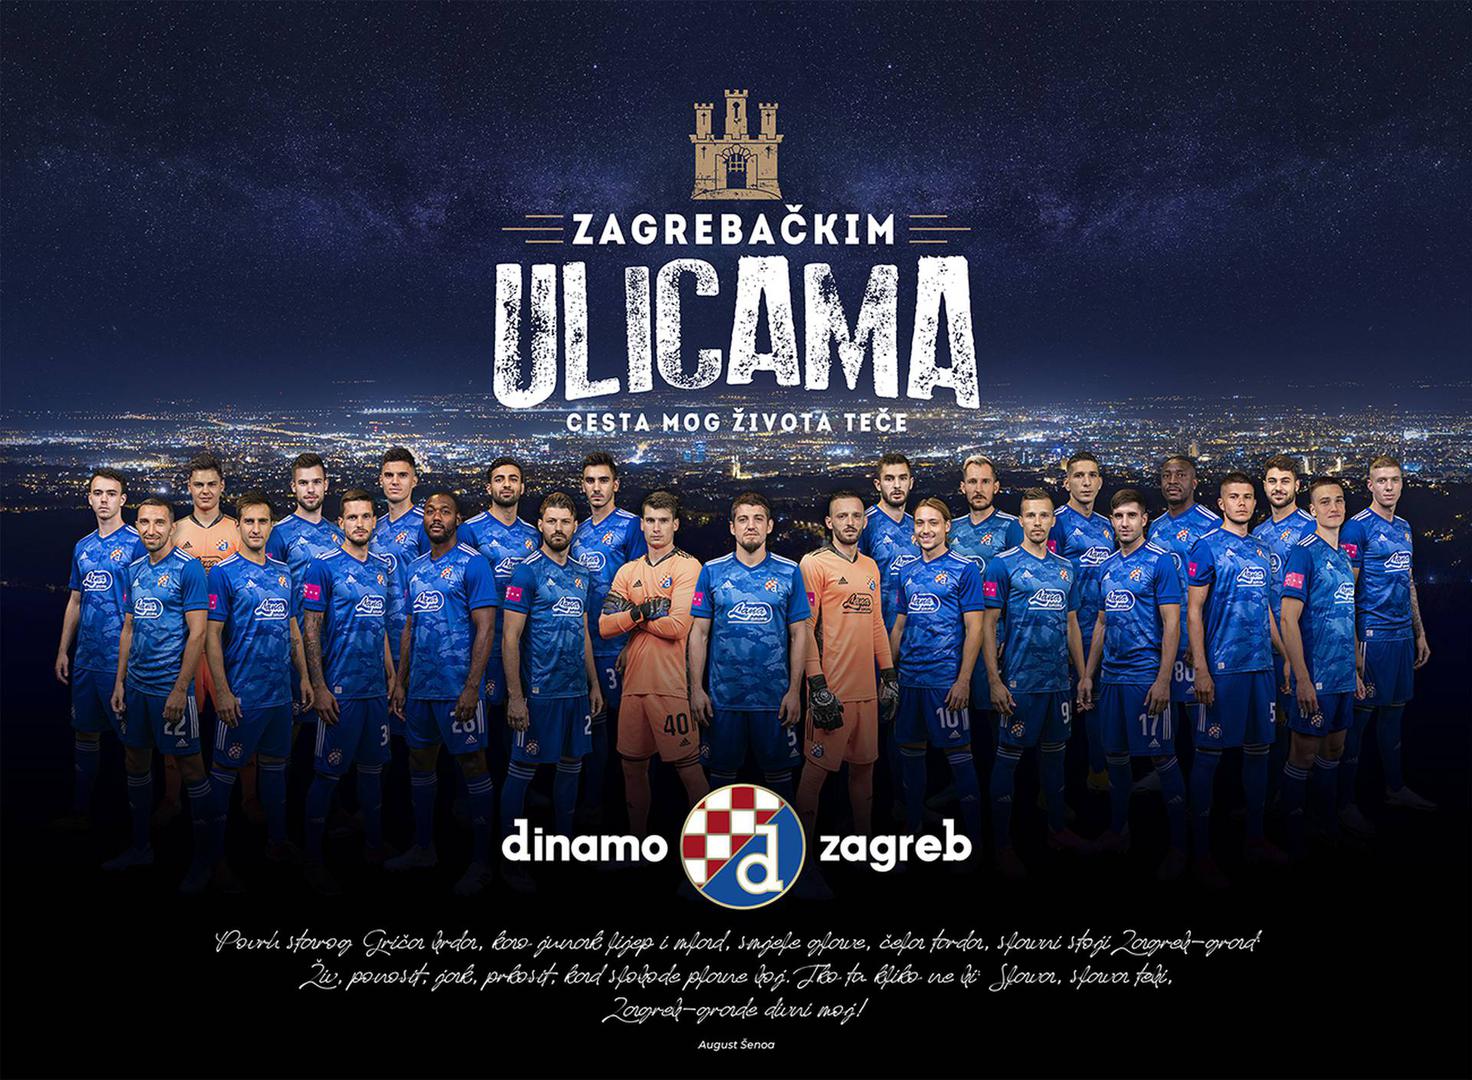 Iz kluba poručuju kako je Zagreb njihov dom, a Dinamo simbol Zagreba pa su stoga napravili kalendar kojim žele istaknuti svoju ljubav prema gradu. 